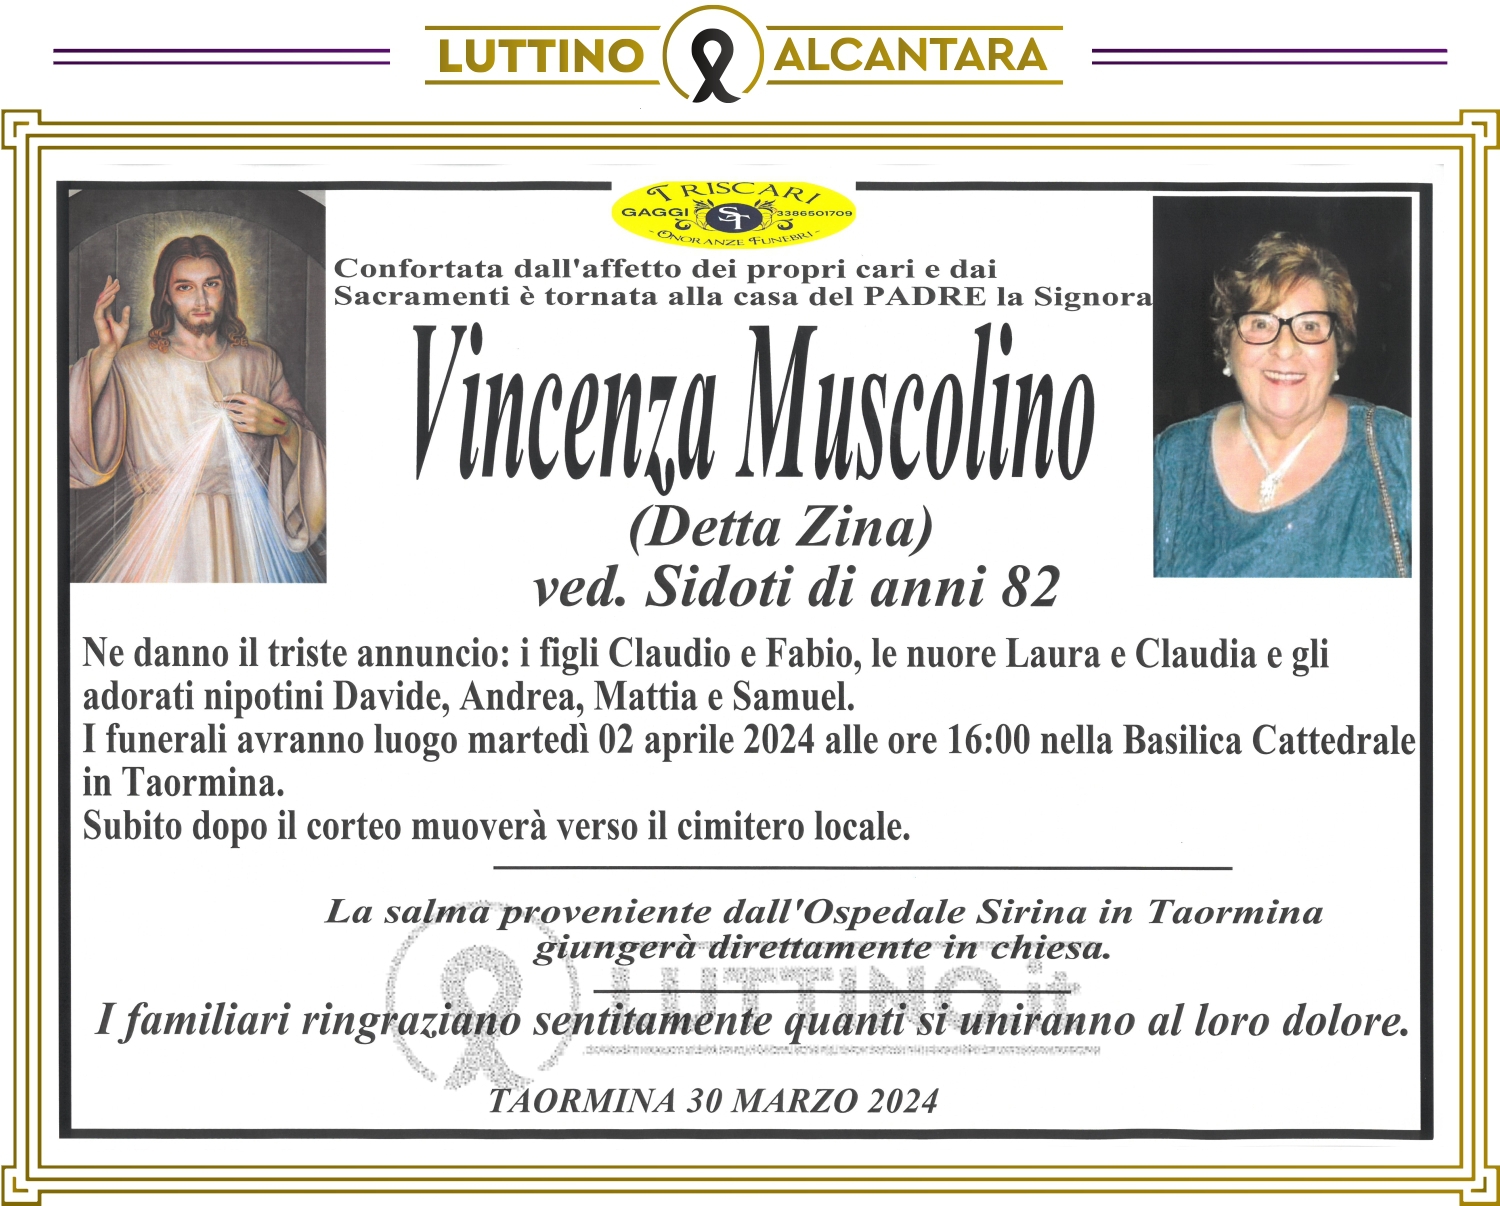 Vincenza Muscolino